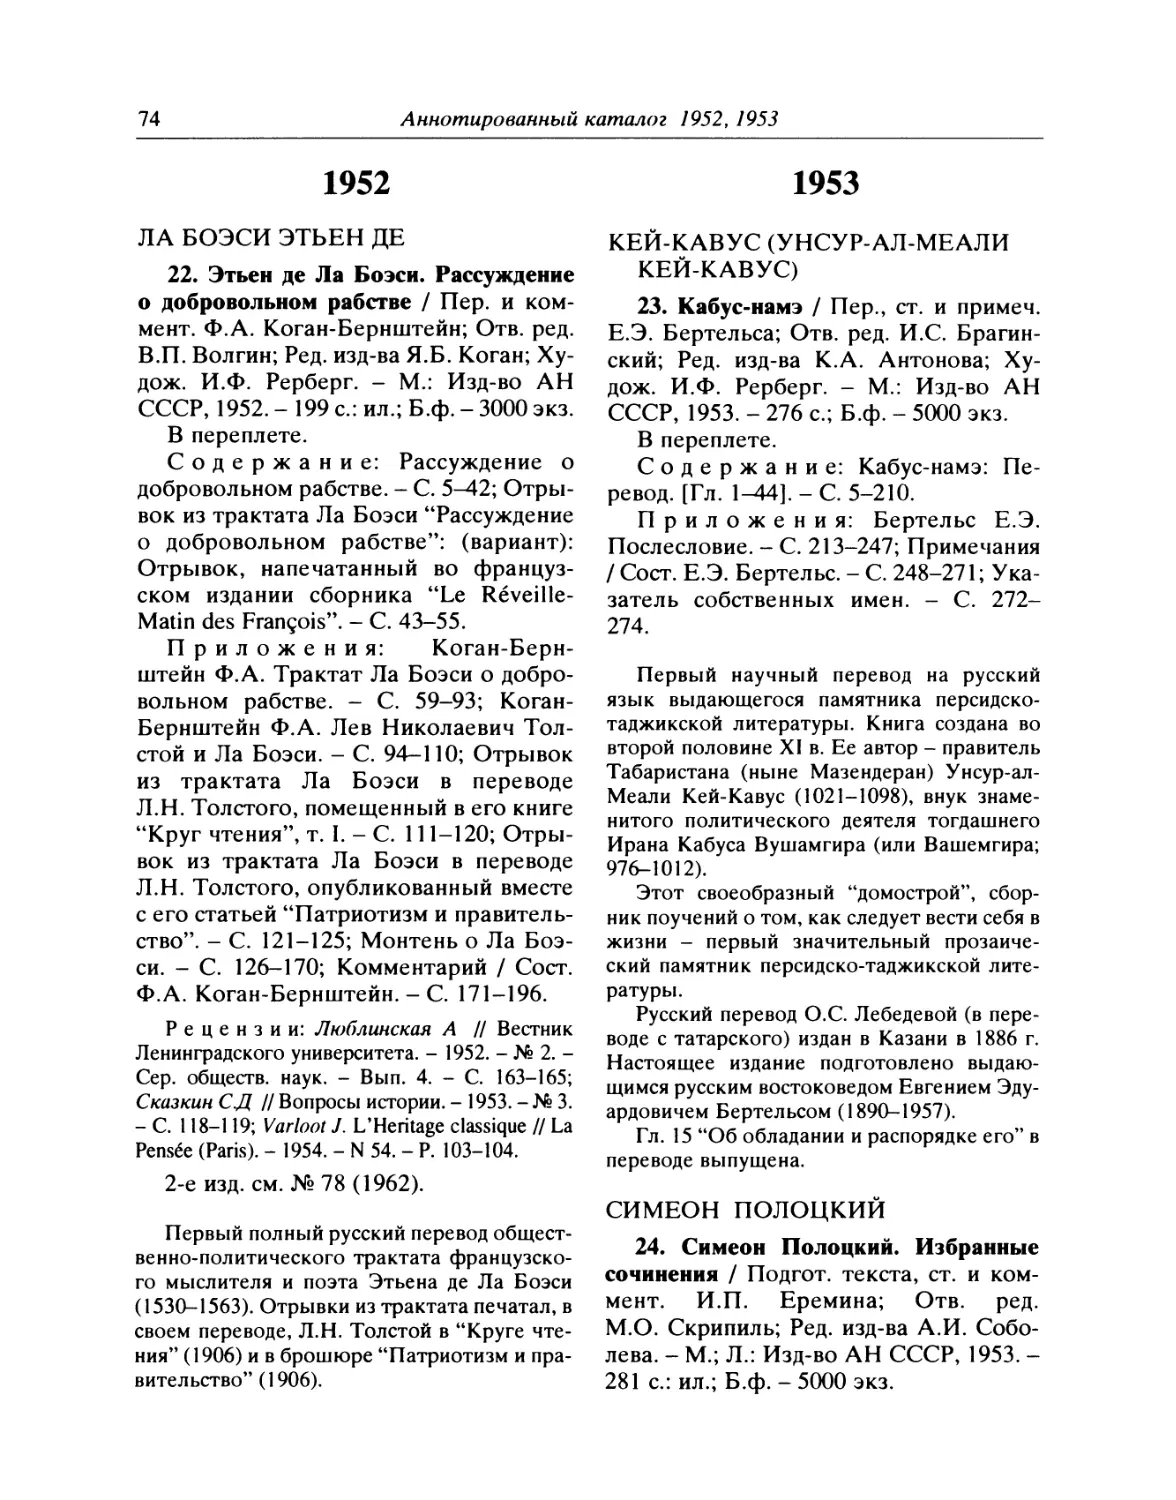 1952
1953
24. Симеон Полоцкий. Избранные сочинения